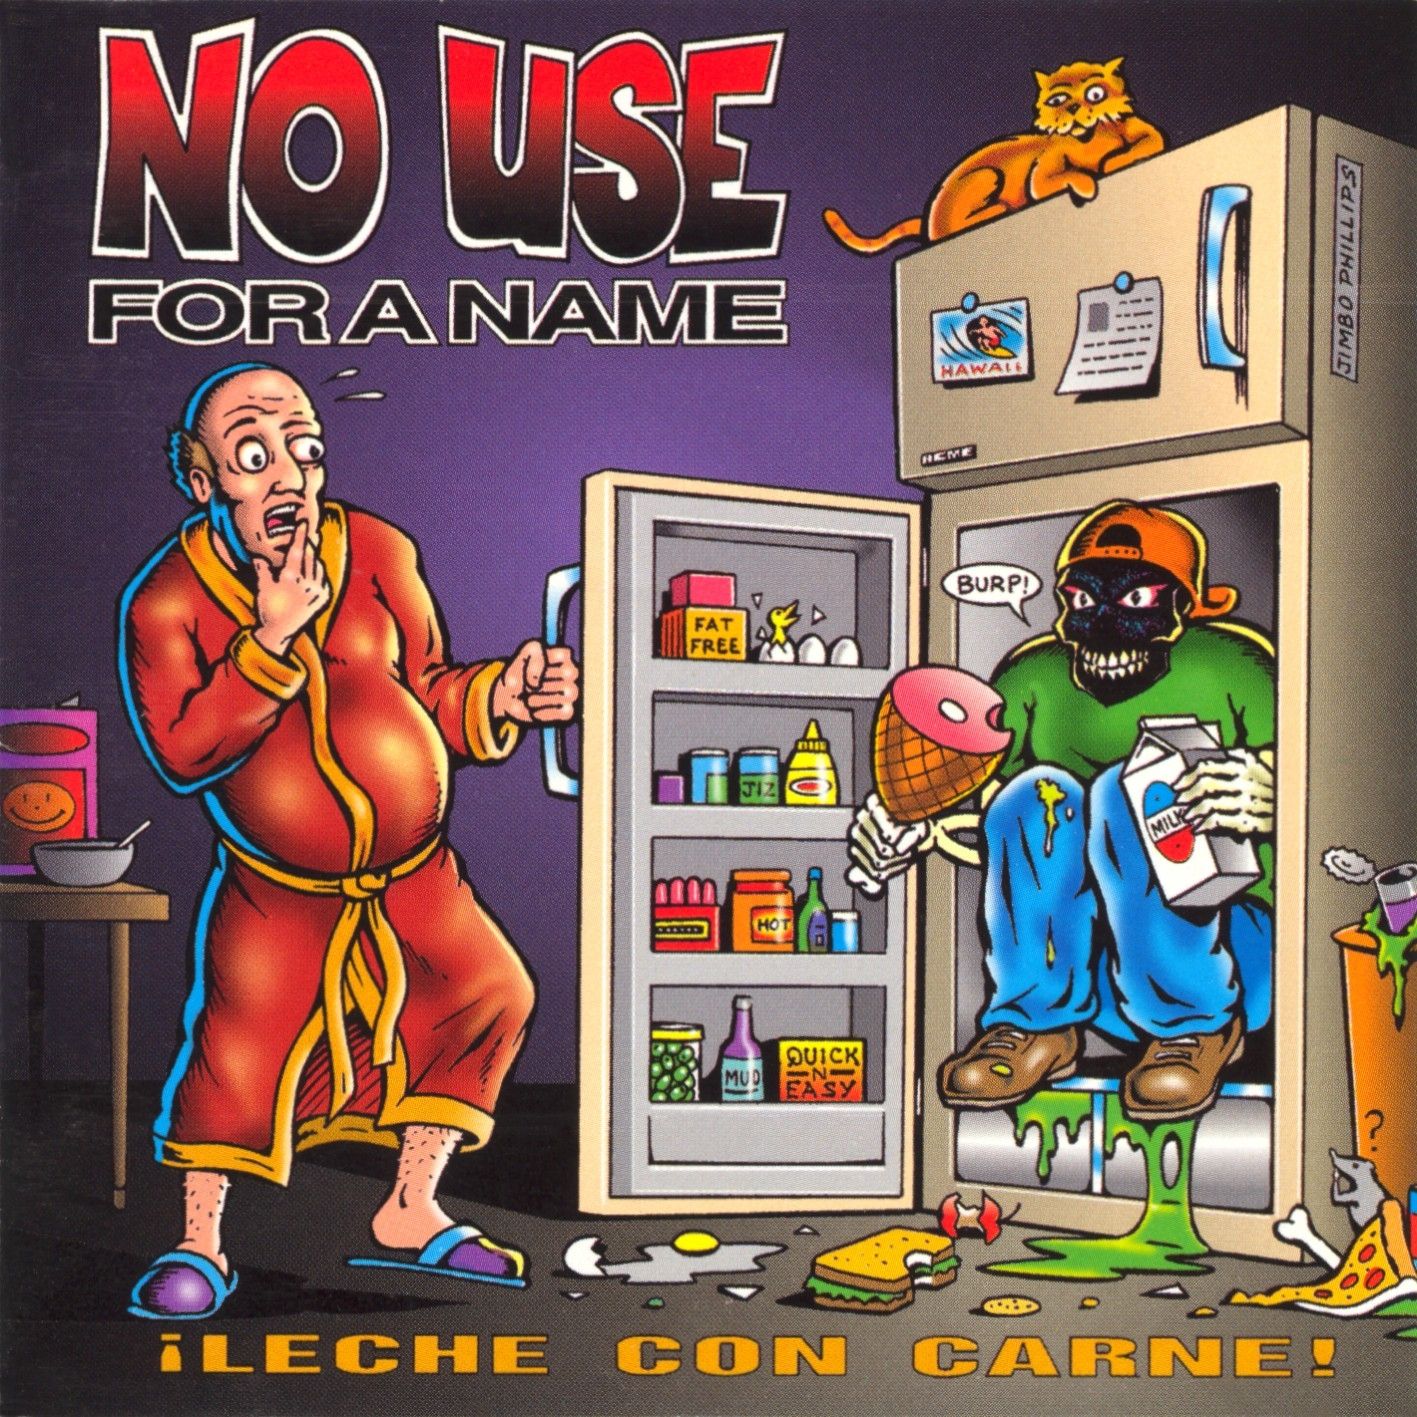 Imagem do álbum ¡Leche con Carne! do(a) artista No Use For A Name